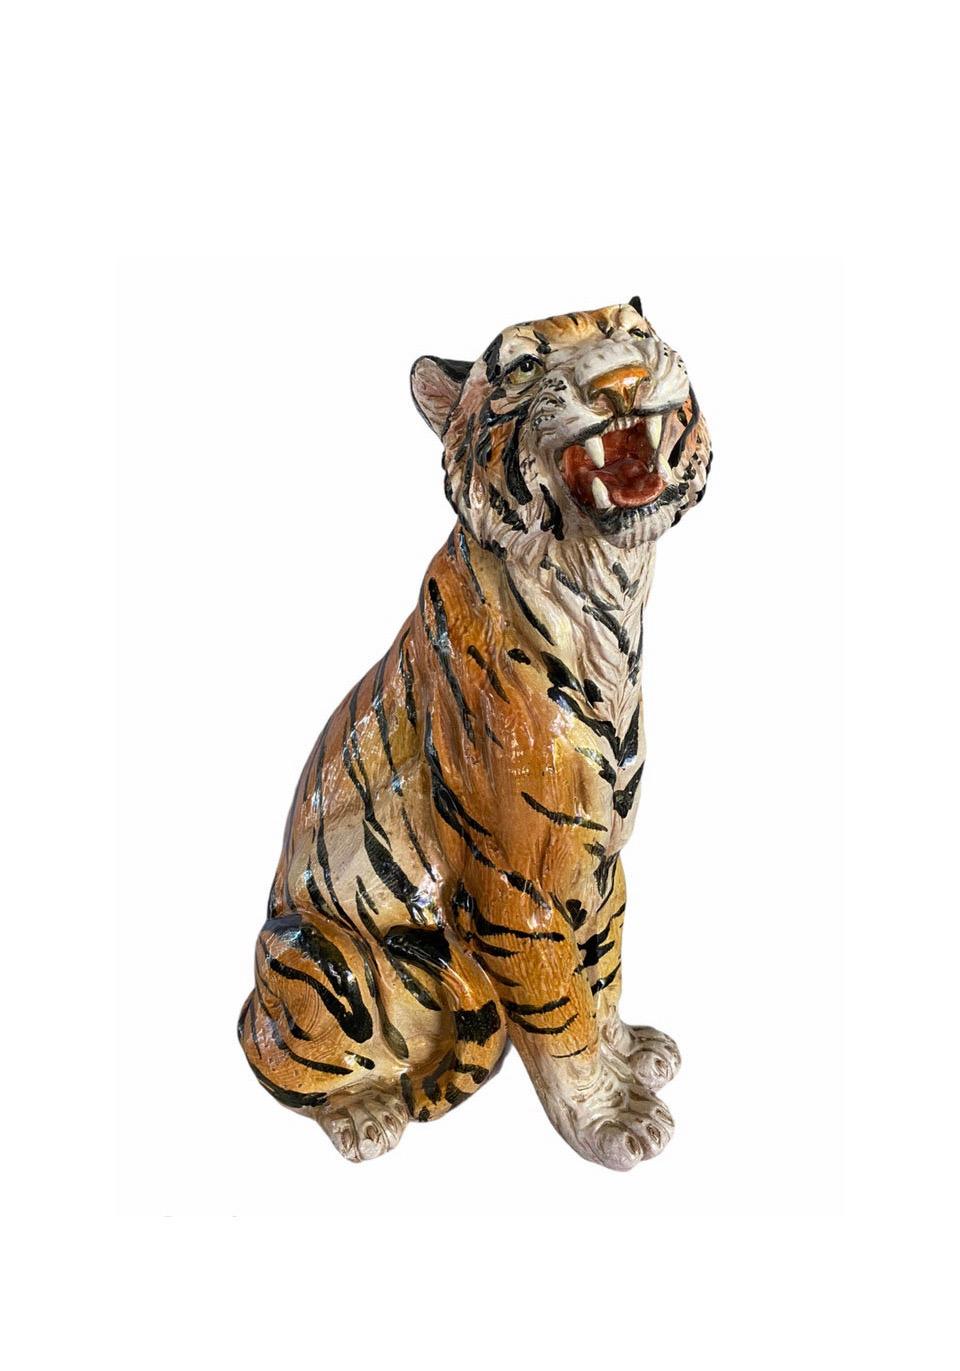 Inconnu Sculpture Vintage en Terracota émaillée Tigre rugissant